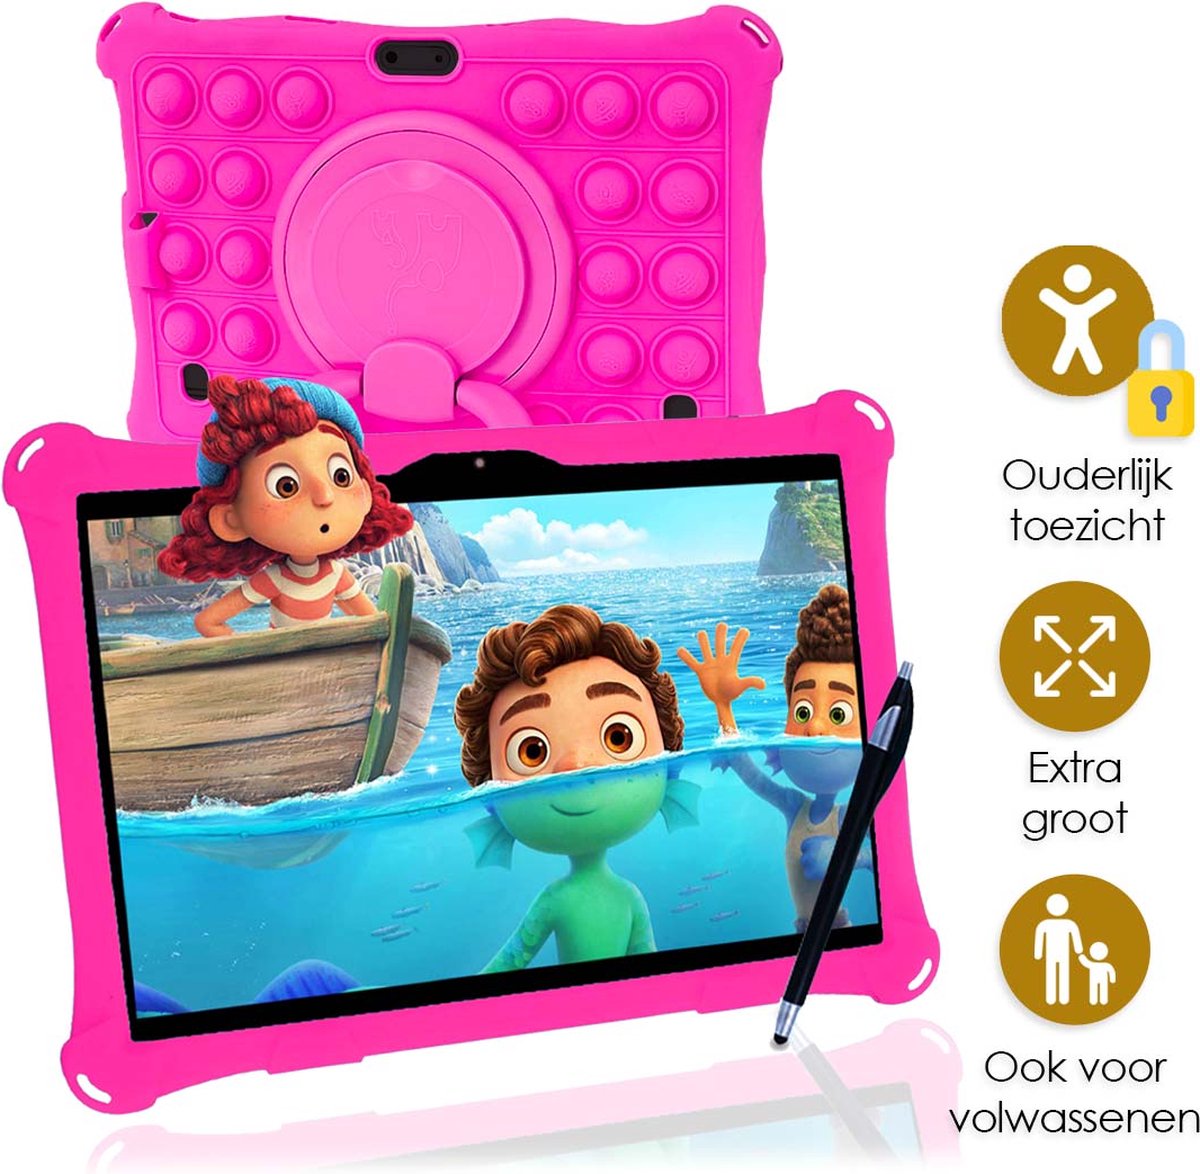 AngelTech Kindertablet XL PRO I – 100%Kidsproof– Extra Groot – Kinder tablet - Ook Voor Volwassen Gebruik – 10 inch - Ouderlijk toezicht – 360­° Verstelbare Fidgy beschermhoes - 32GB – Roze of Blauw